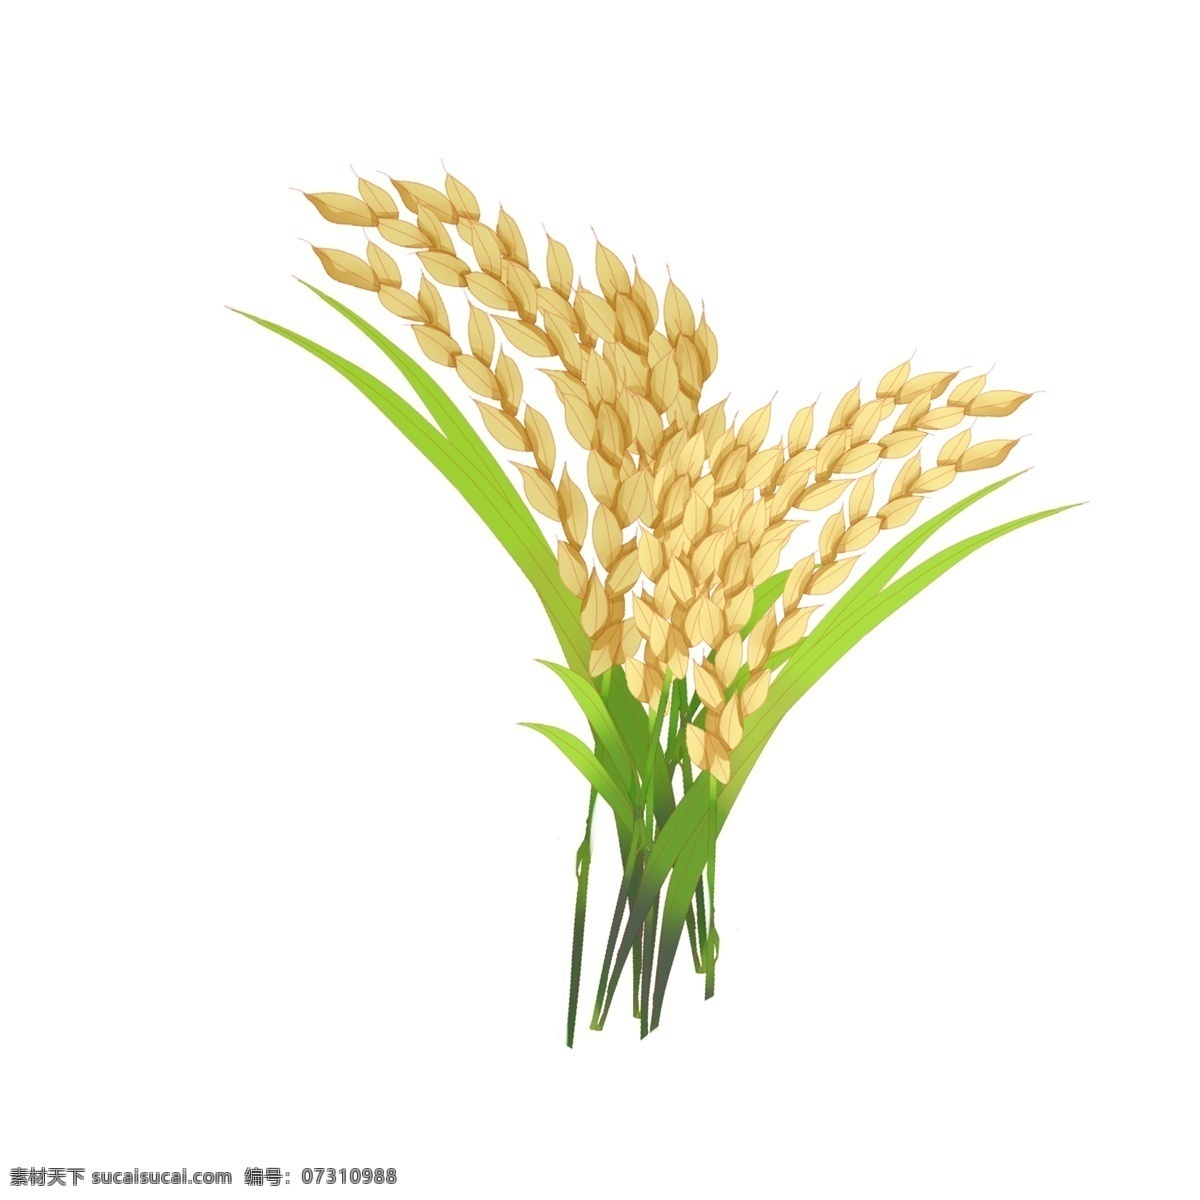 黄色 水稻 谷穗 插图 大米 米粒 水稻大米 黄色稻谷 小插图 食品 绿色产品